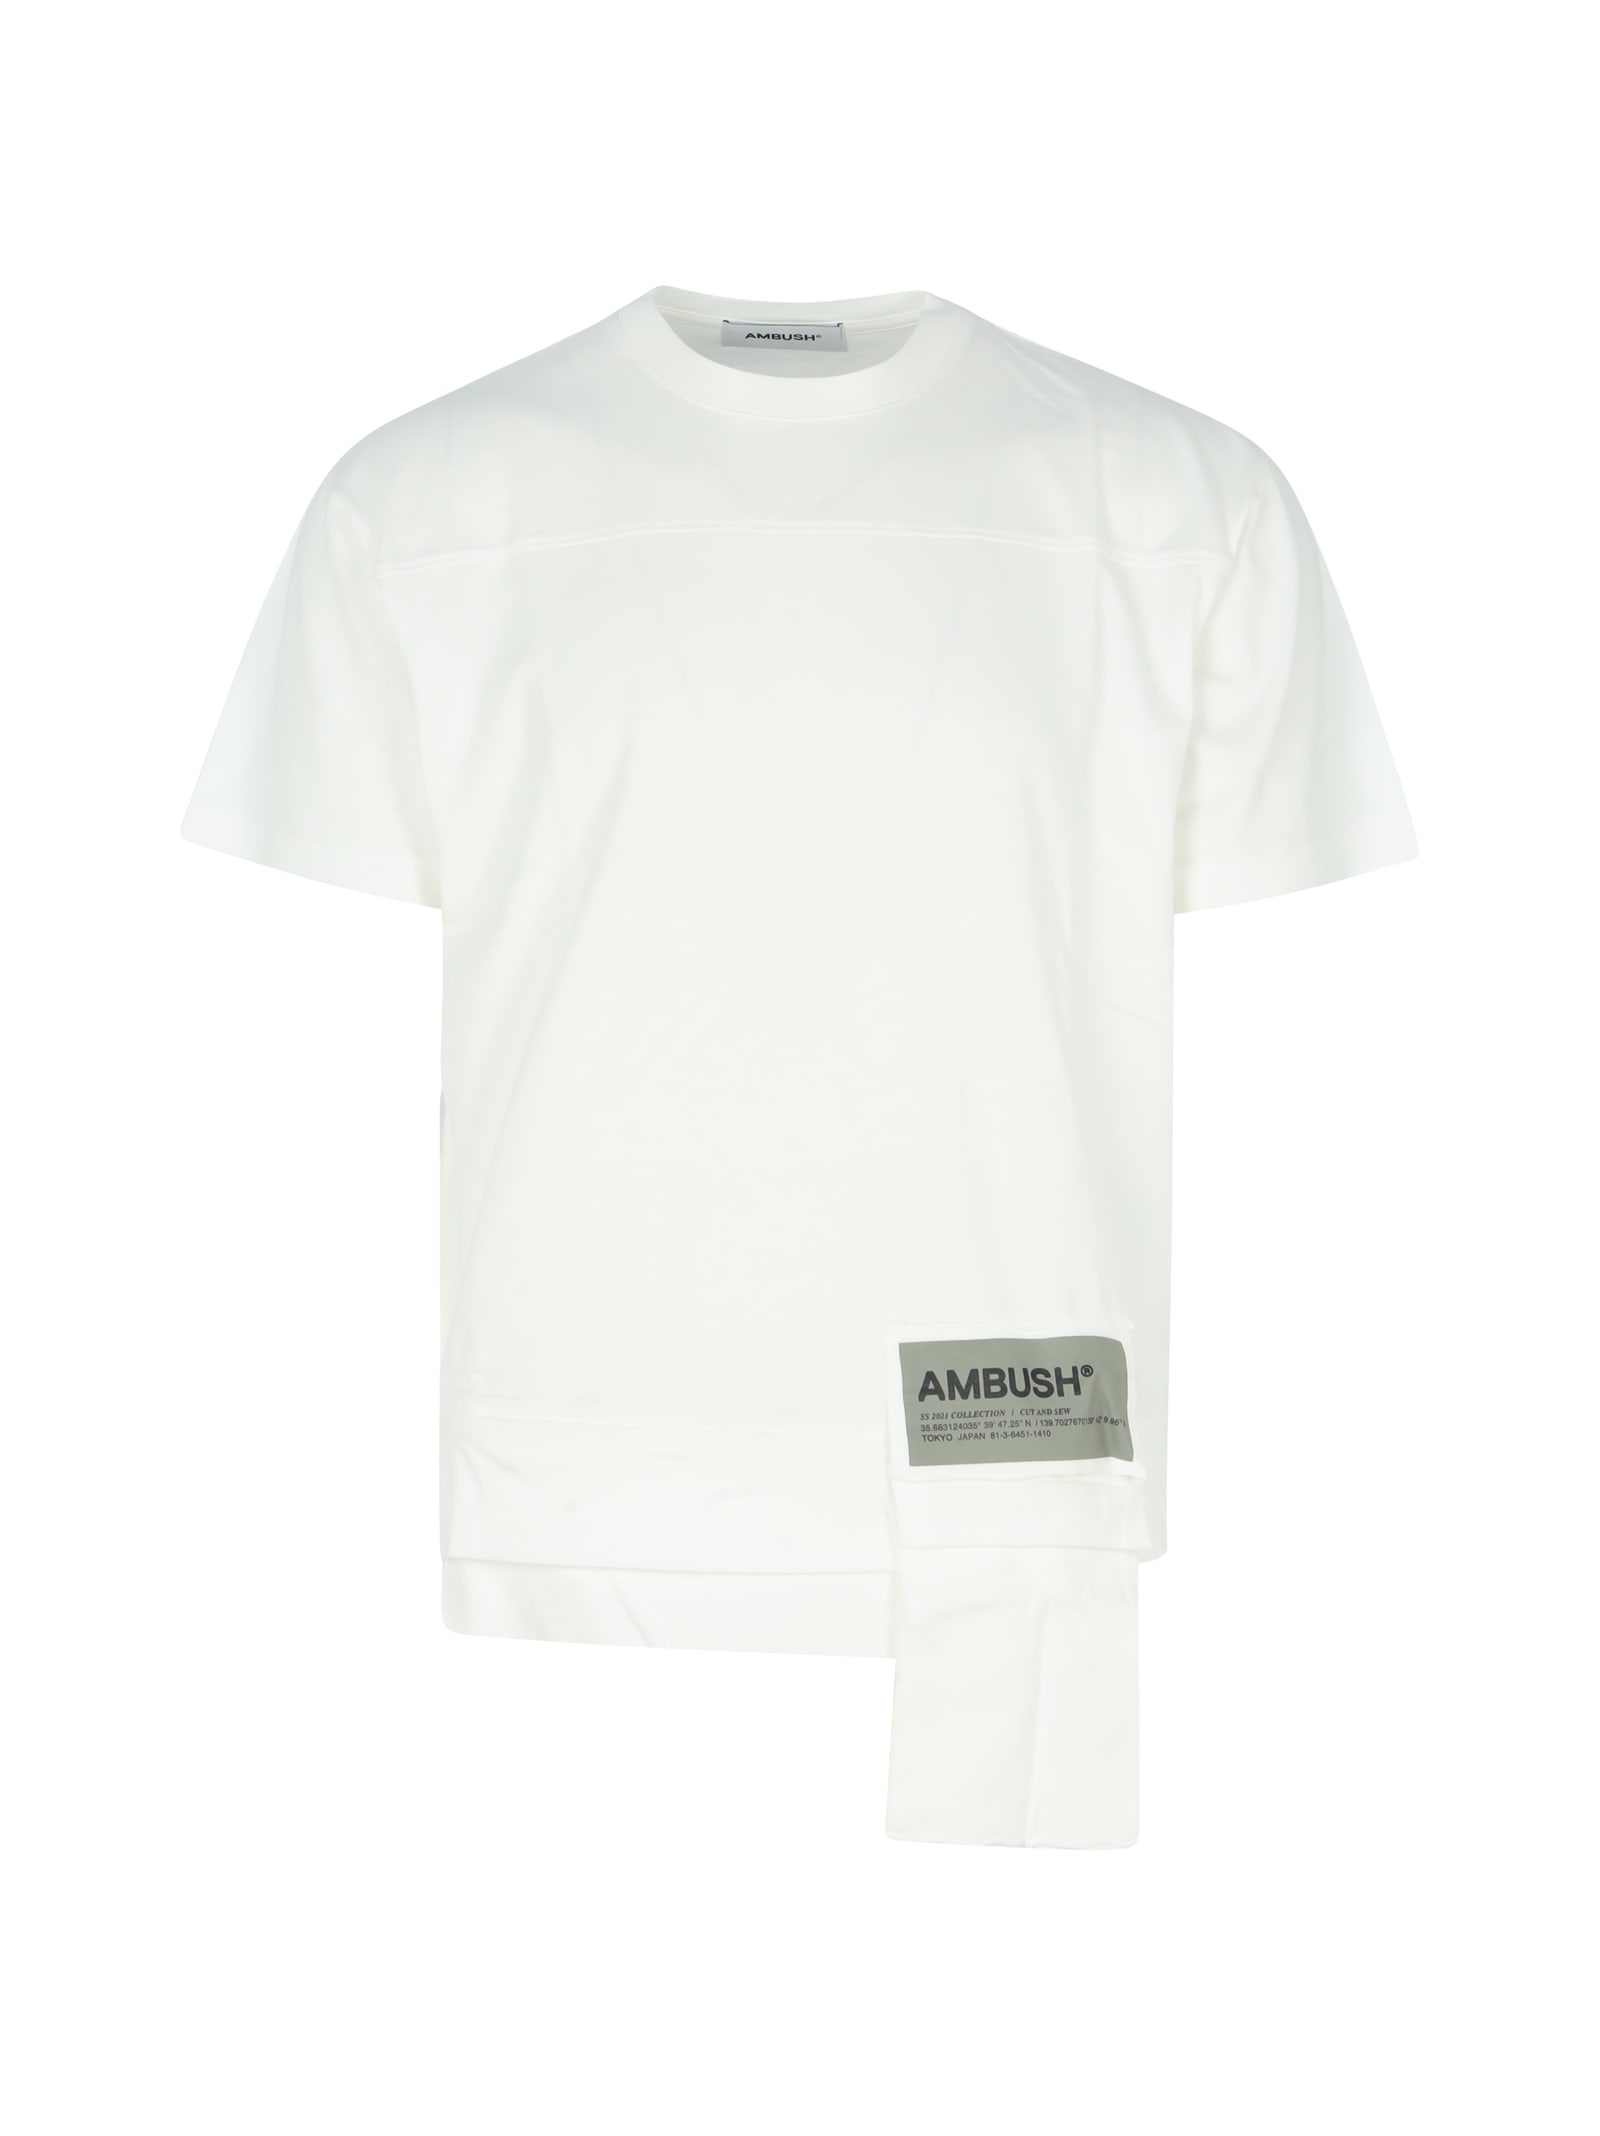 AMBUSH Waist Pocket Jersey T-shirt